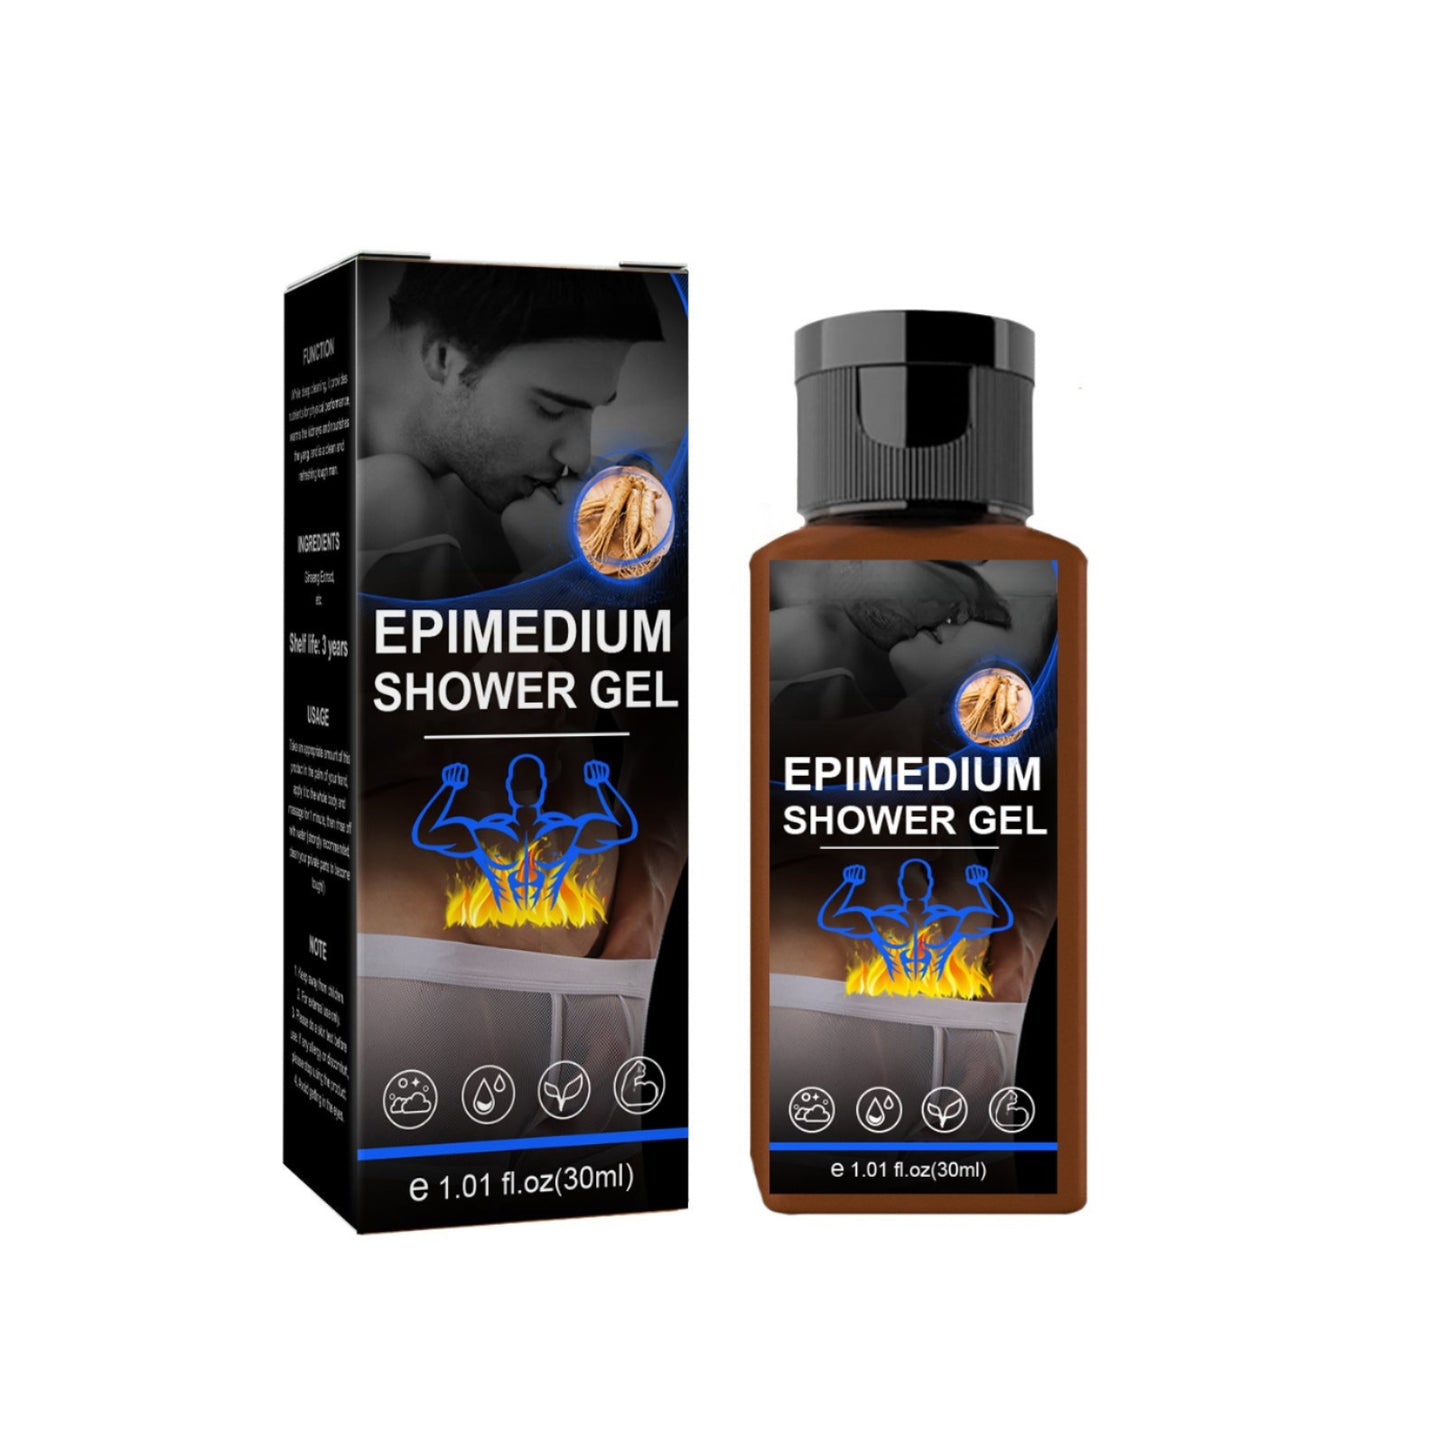 Exclusive Patented Men's Shower Gel